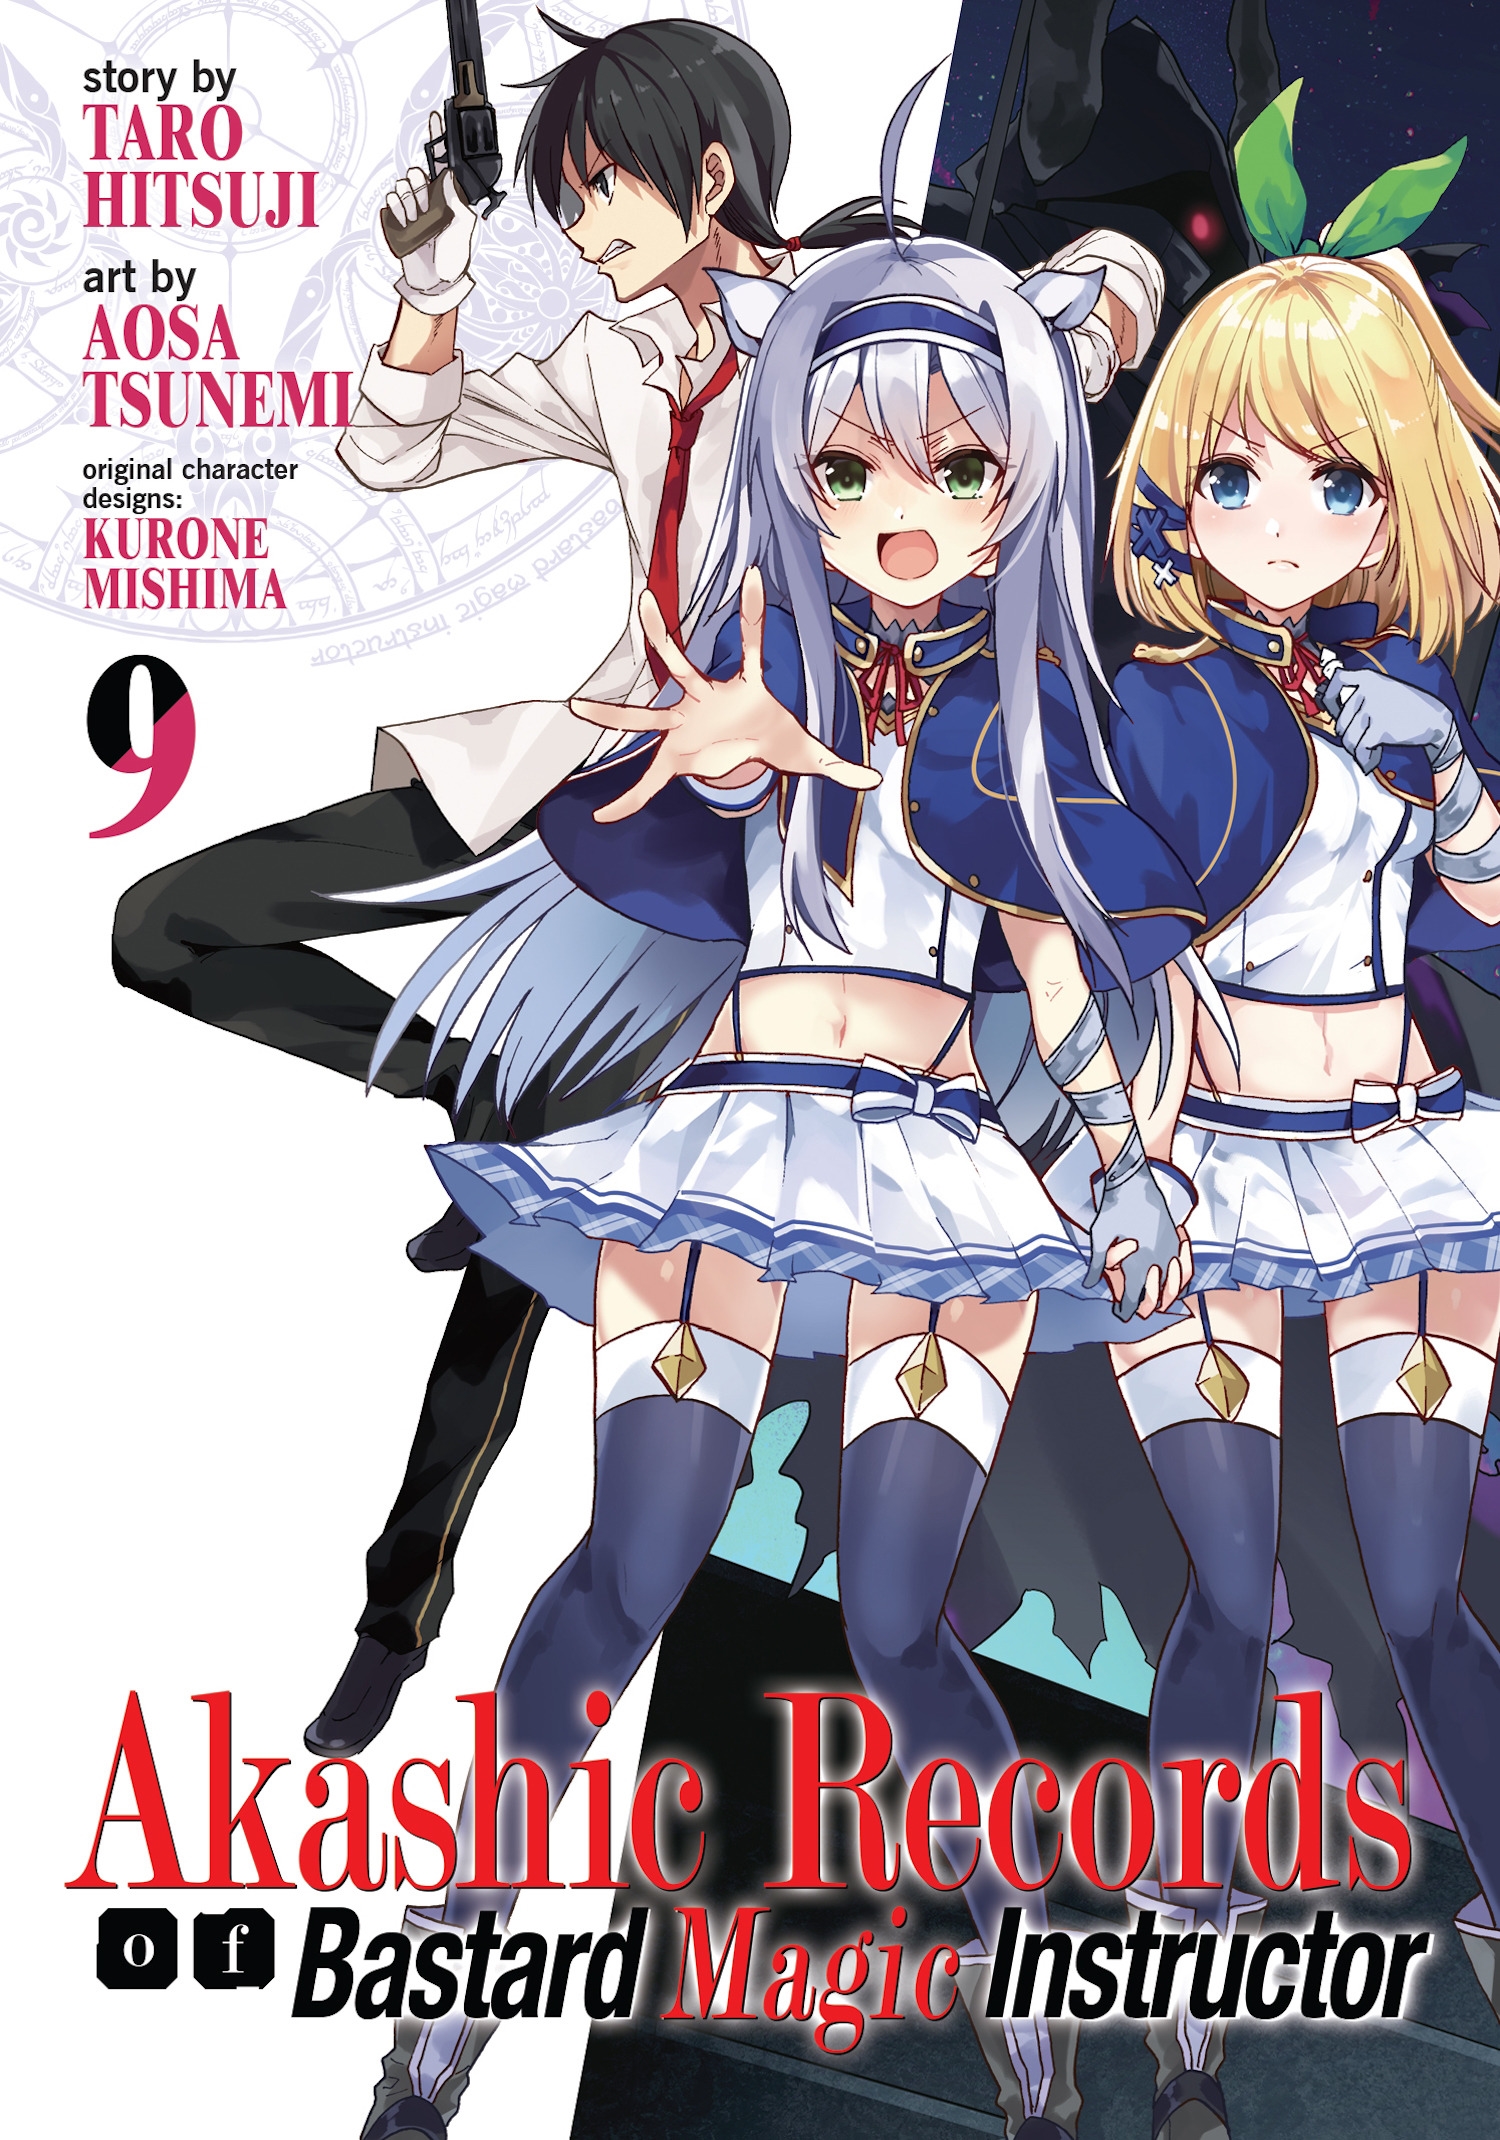 Akashic Records of Bastard Magic Instructor Manga  AnimePlanet